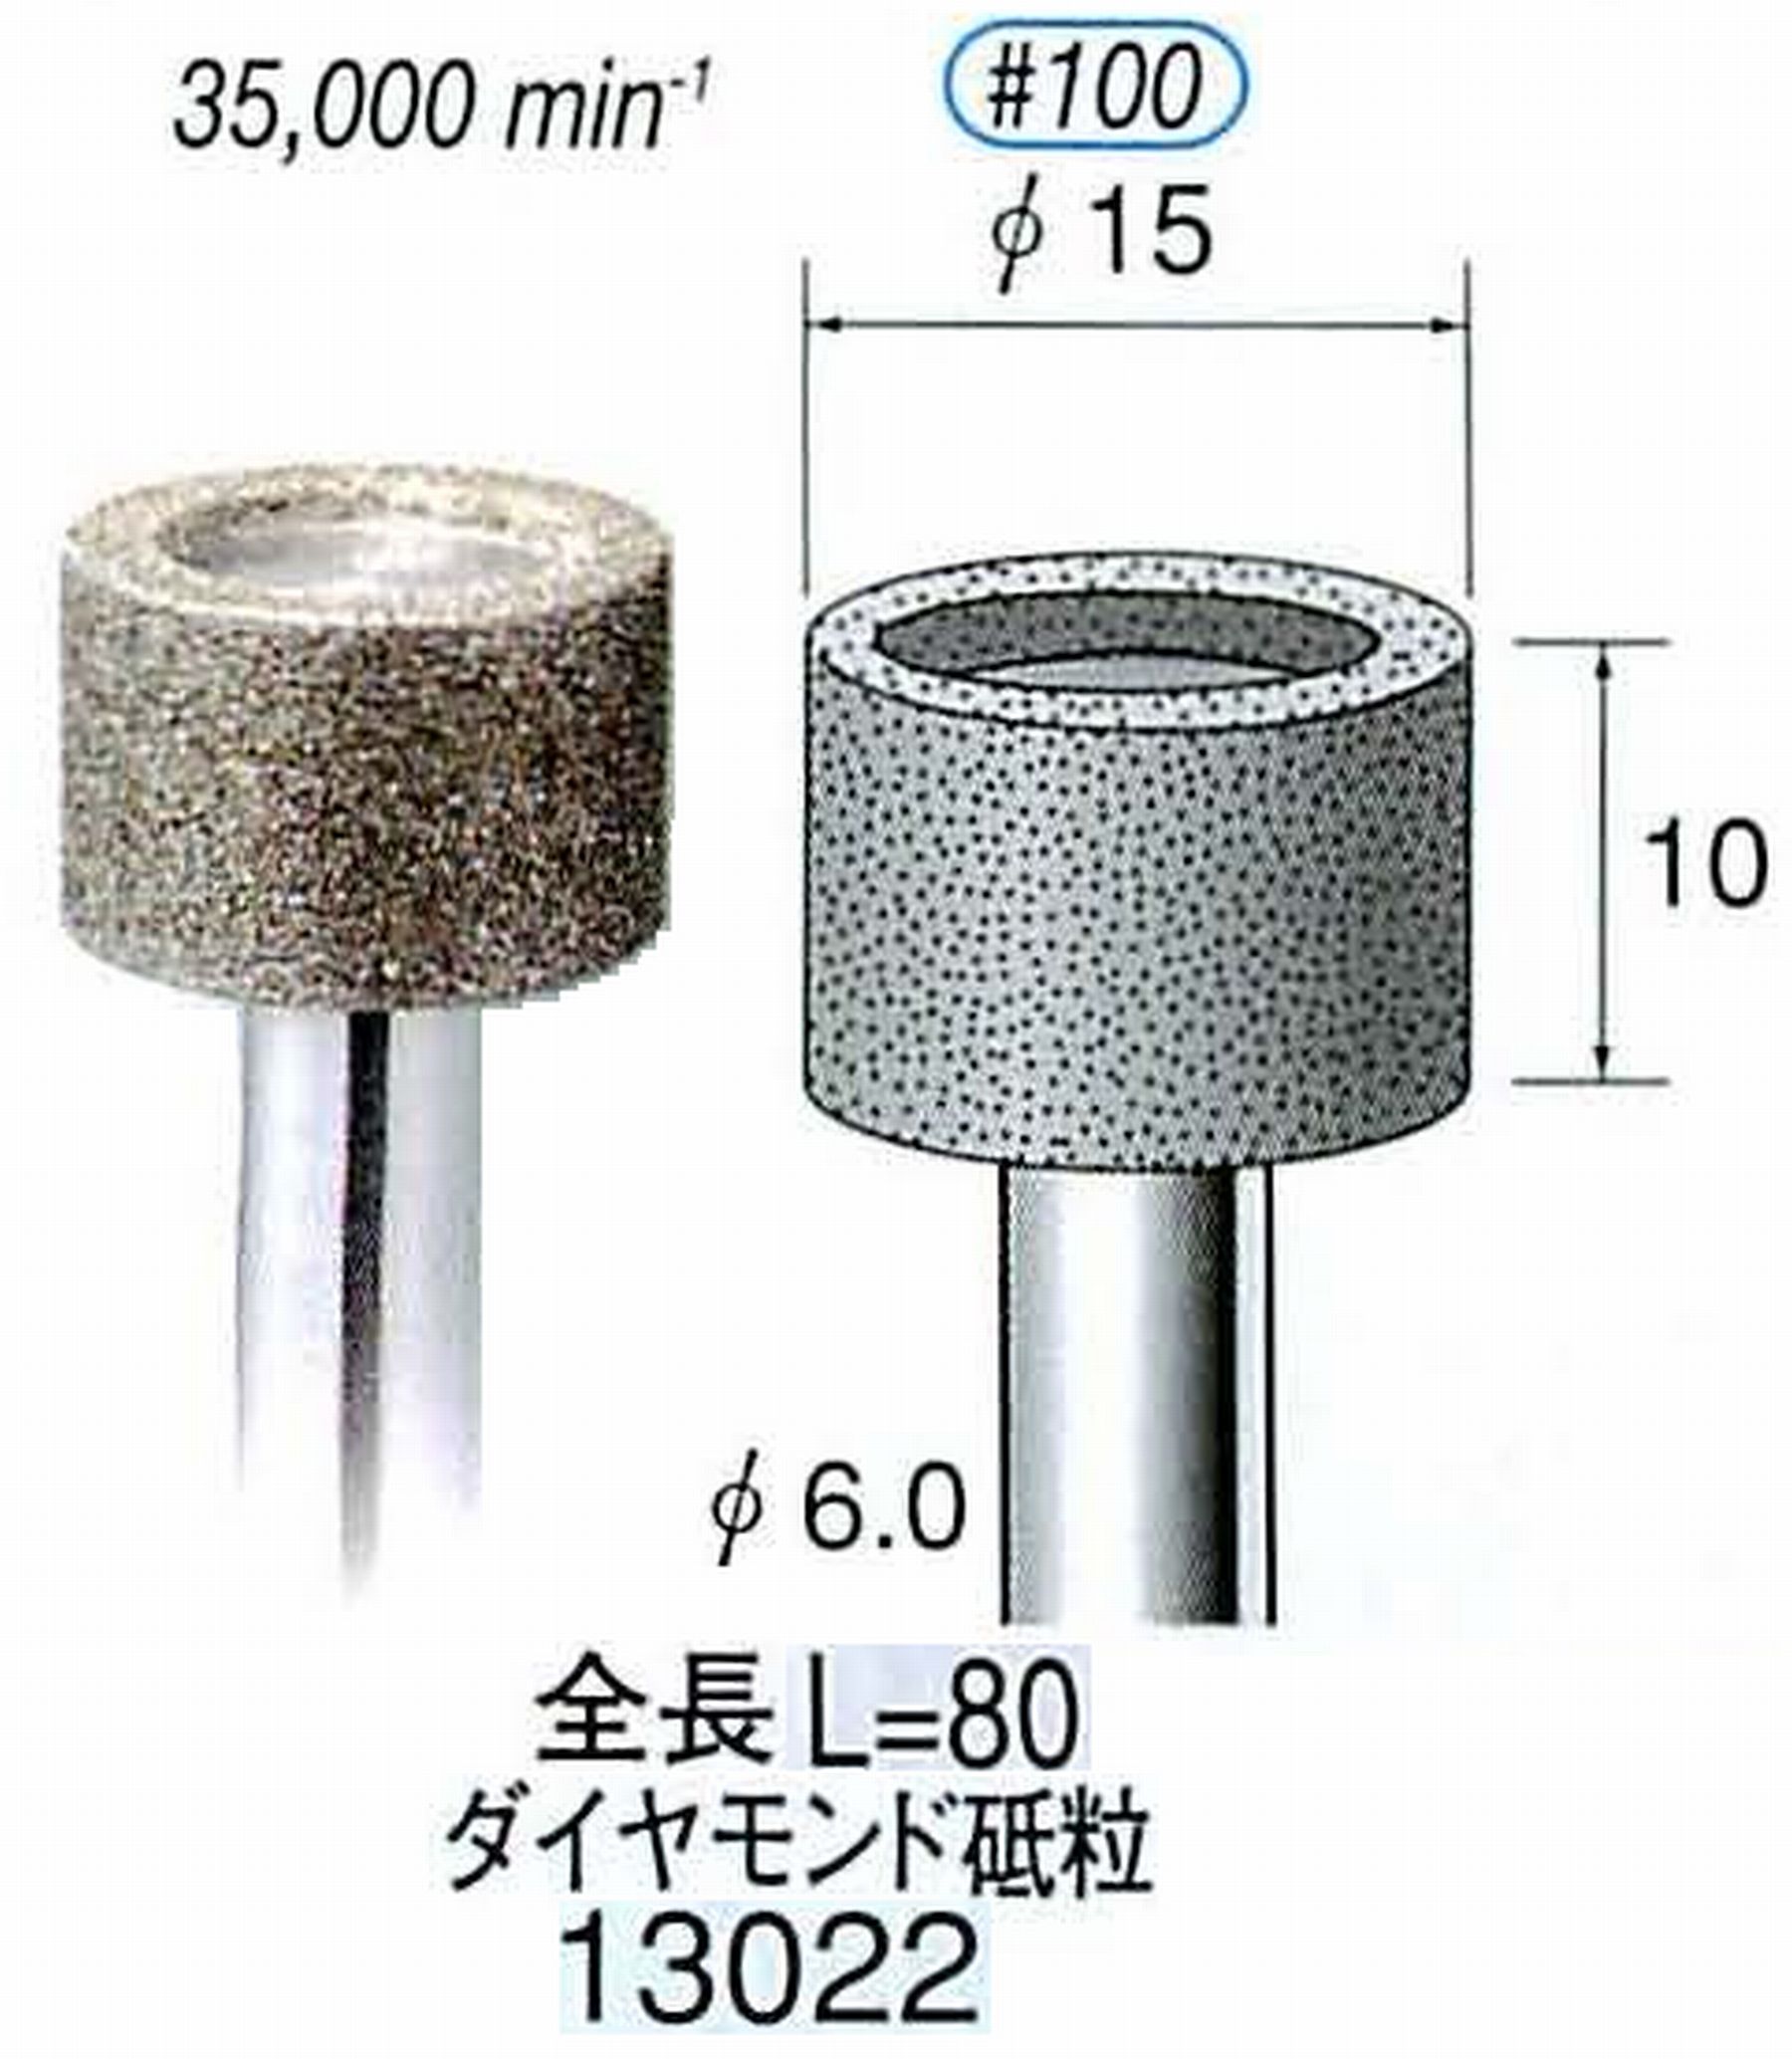 ナカニシ/NAKANISHI 電着ダイヤモンド ダイヤモンド砥粒 軸径(シャンク)φ6.0mm 13022